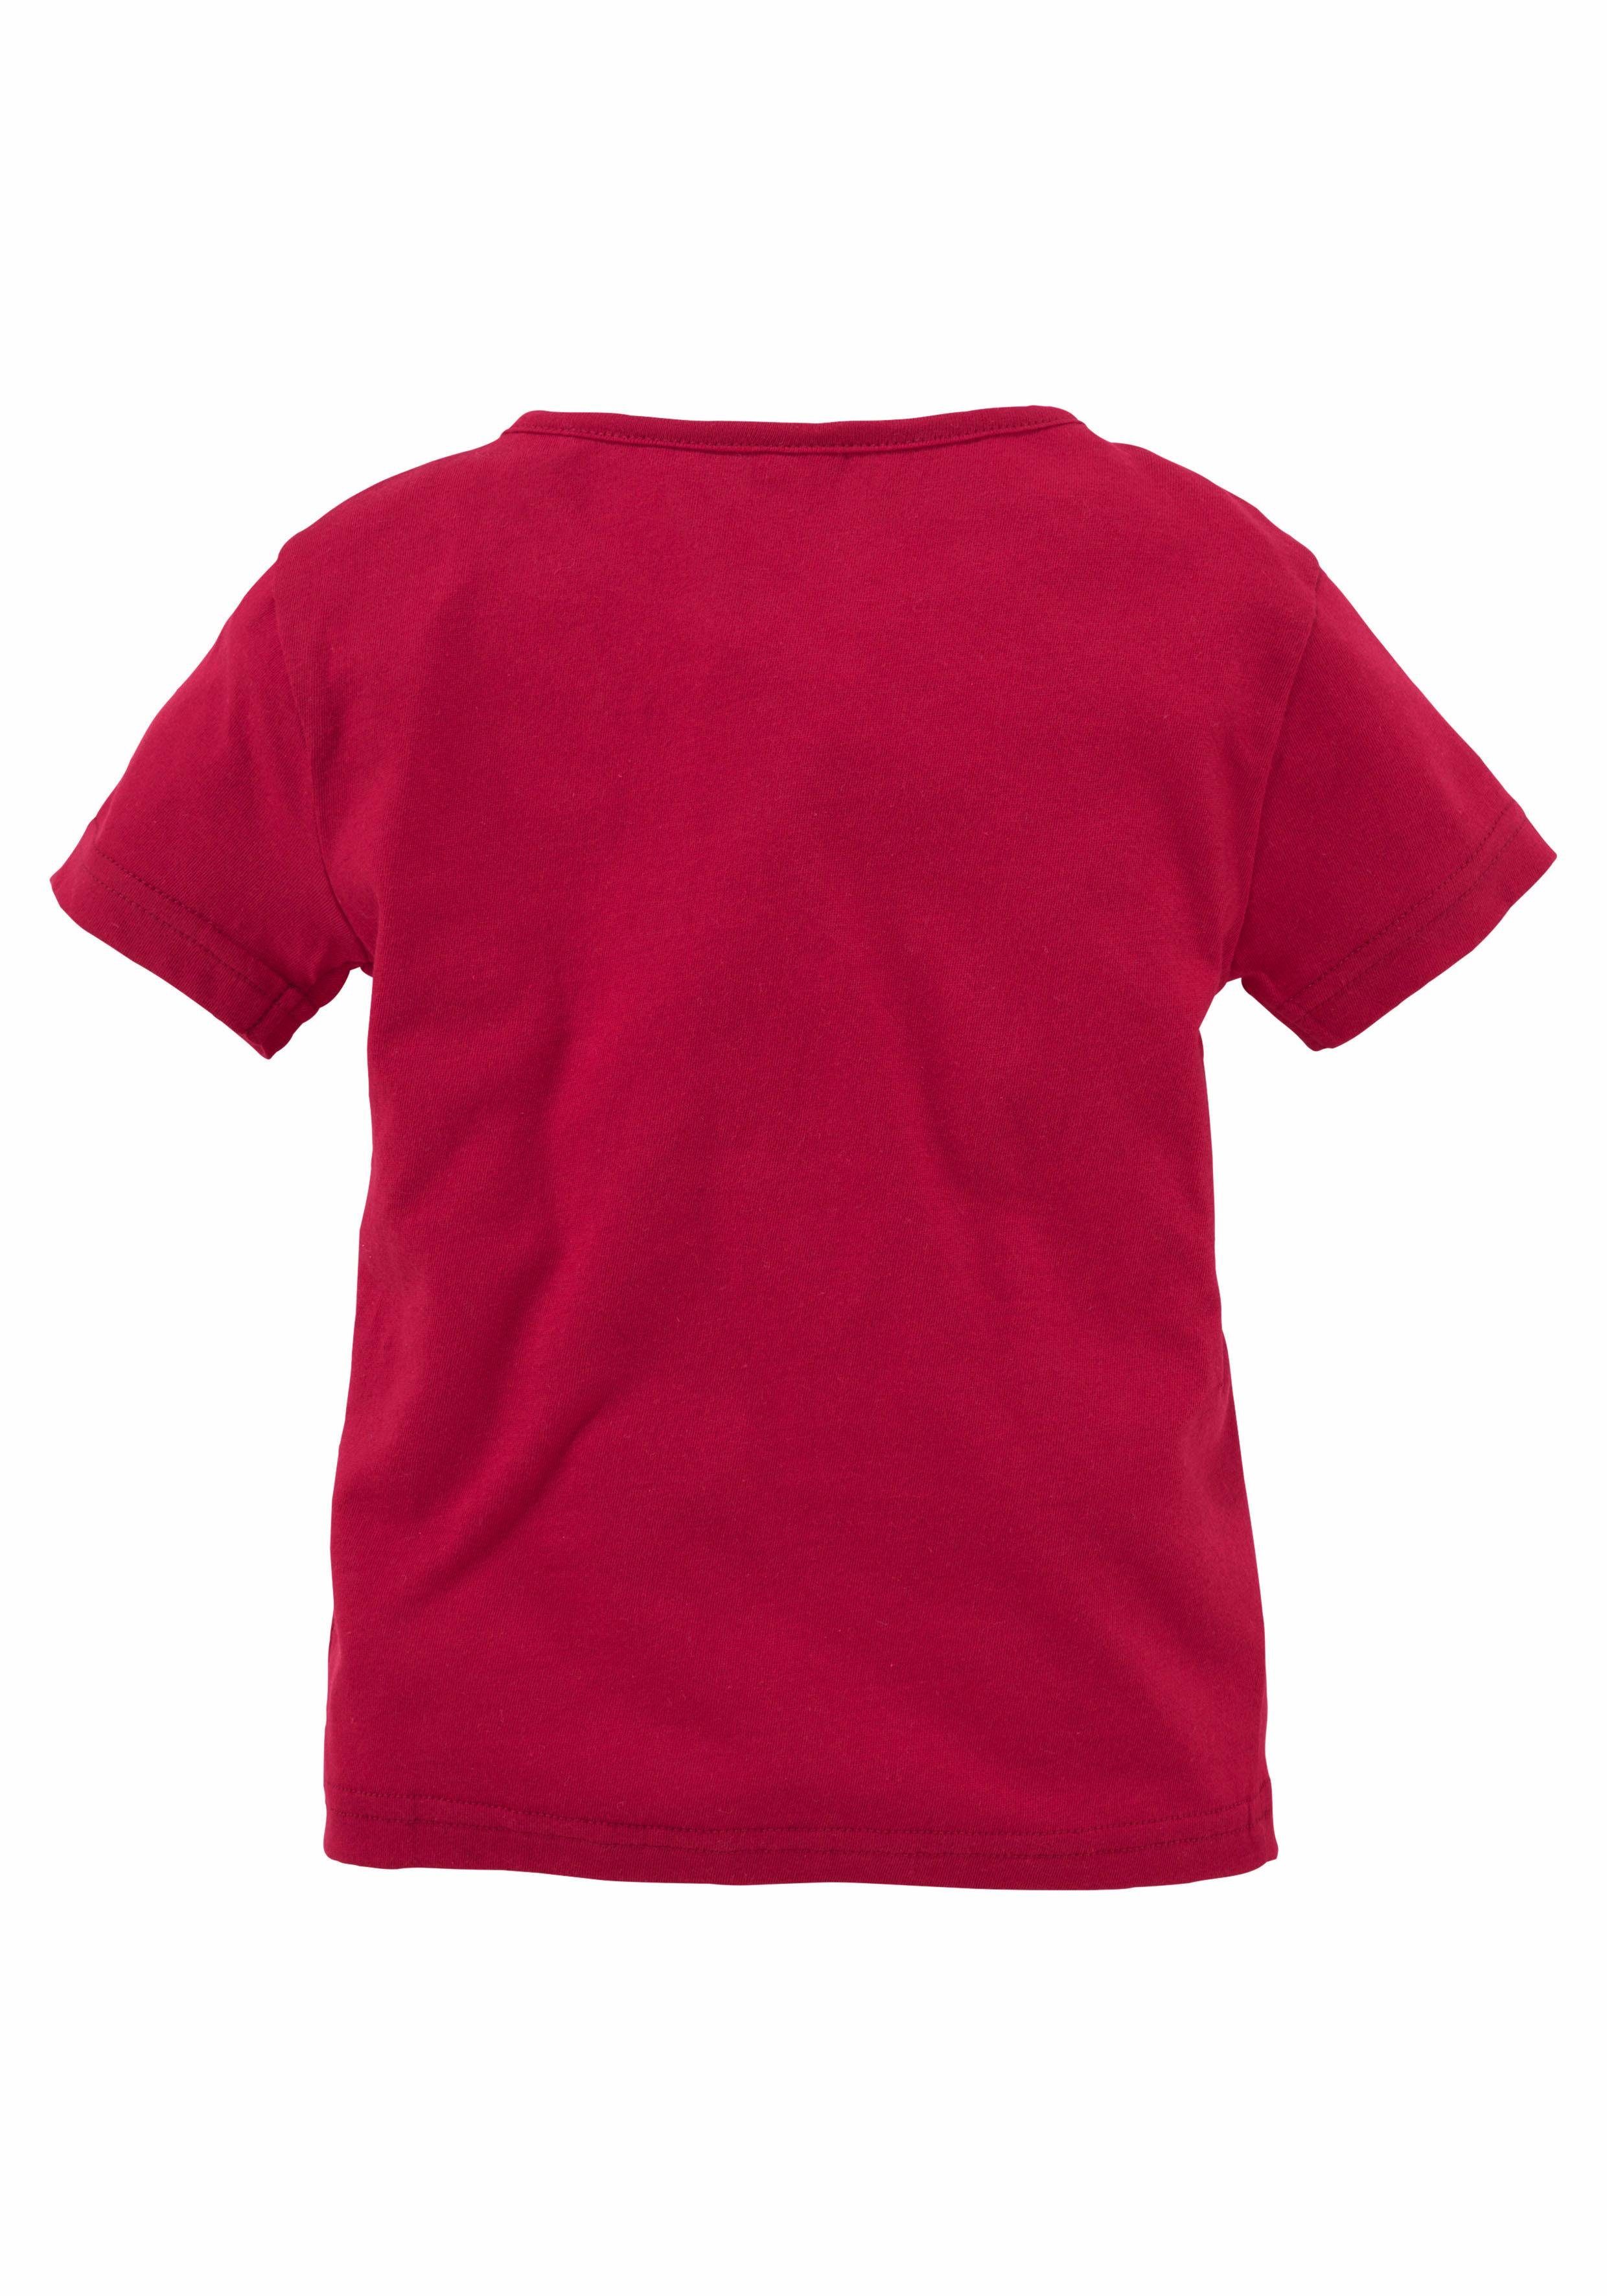 KIDSWORLD T-Shirt, Druck Glitzereffekten "Einhorn" mit